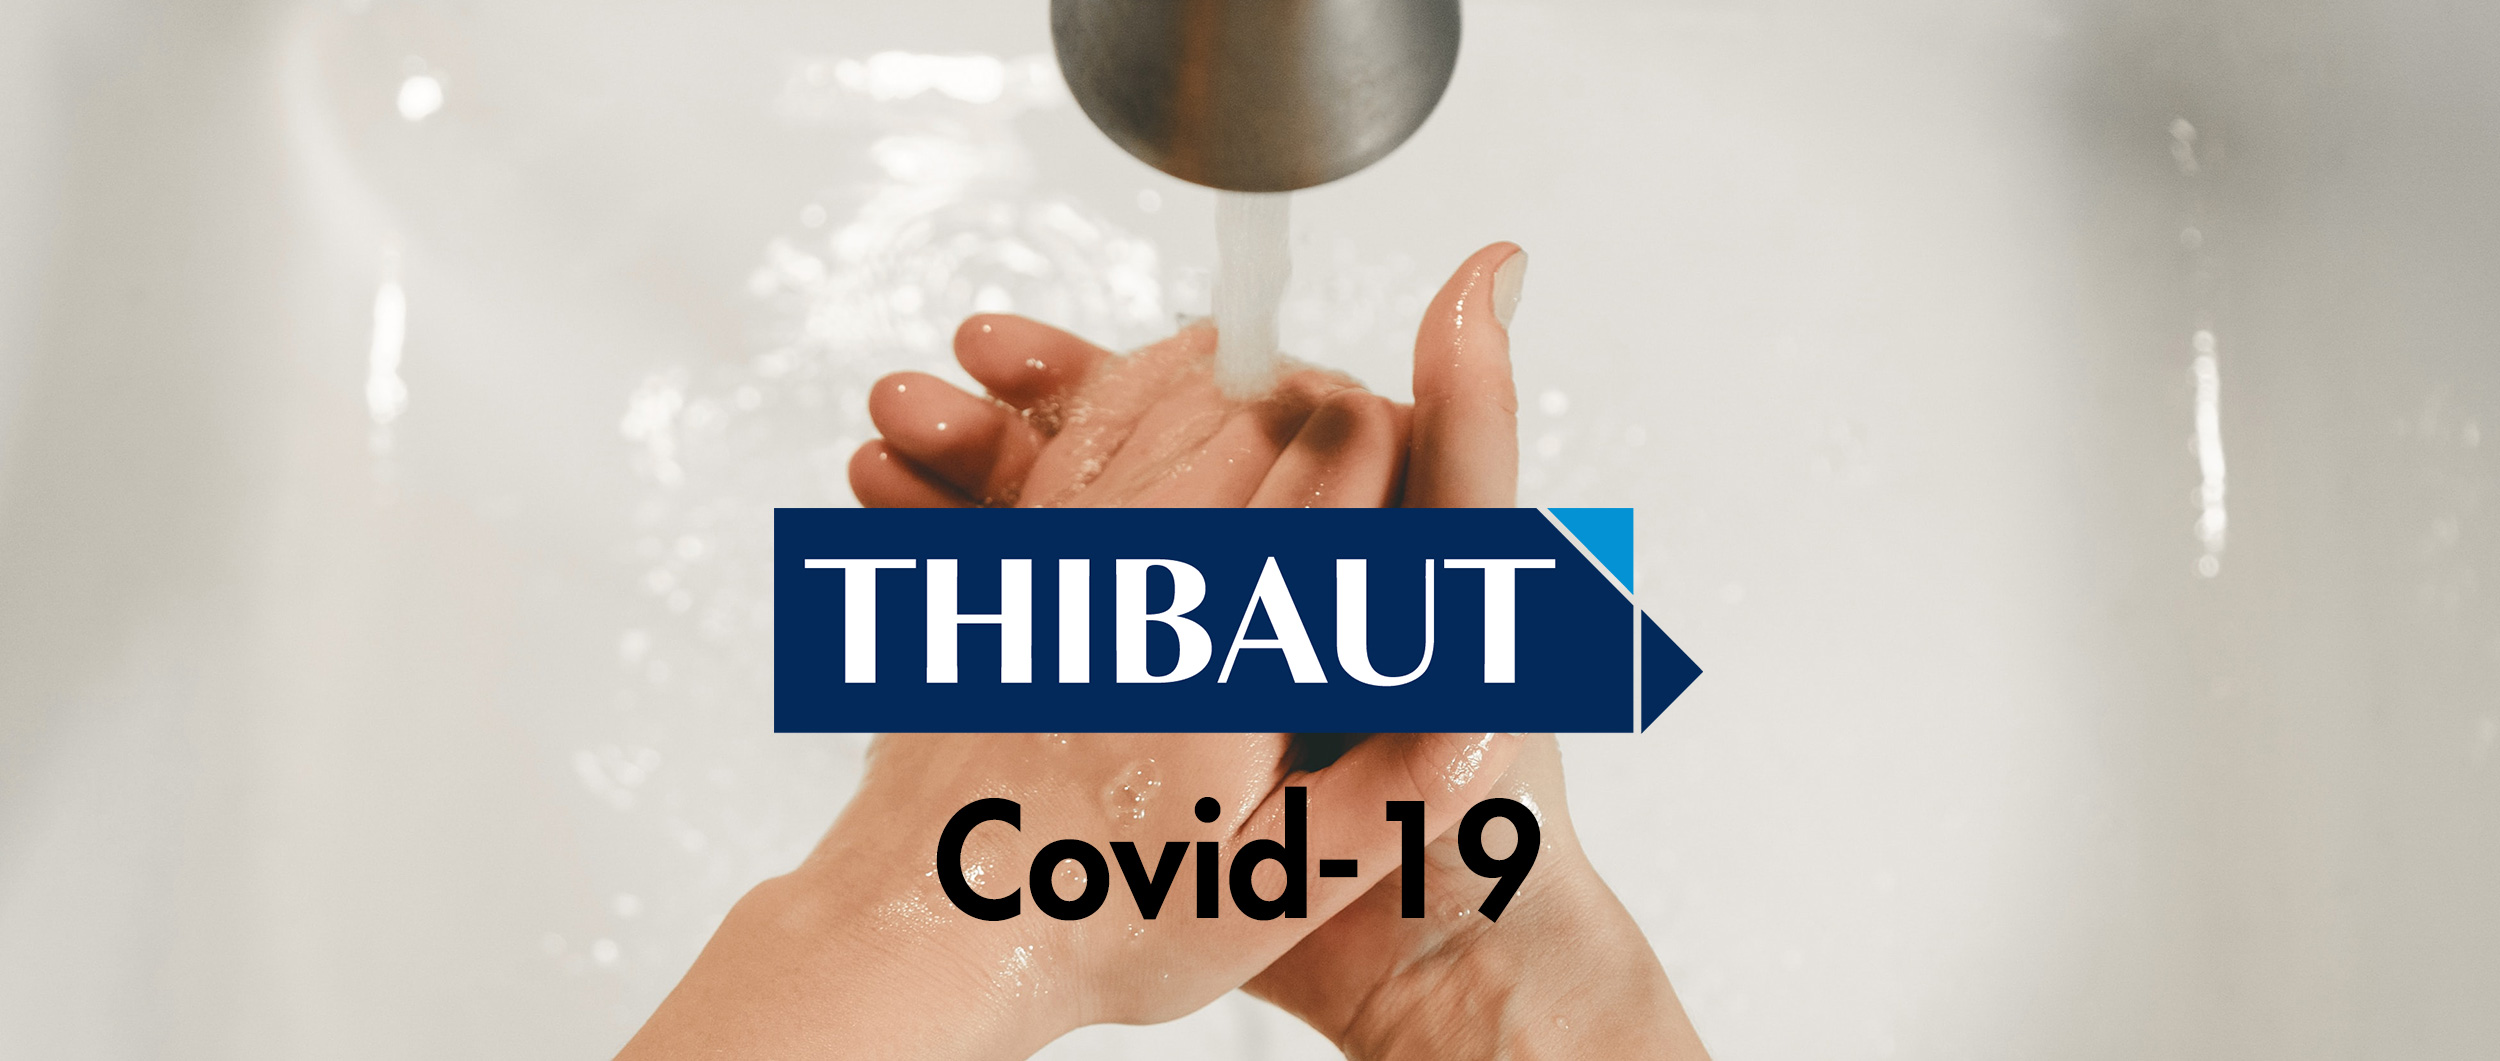 COVID-19, THIBAUT confirma su compromiso con sus clientes